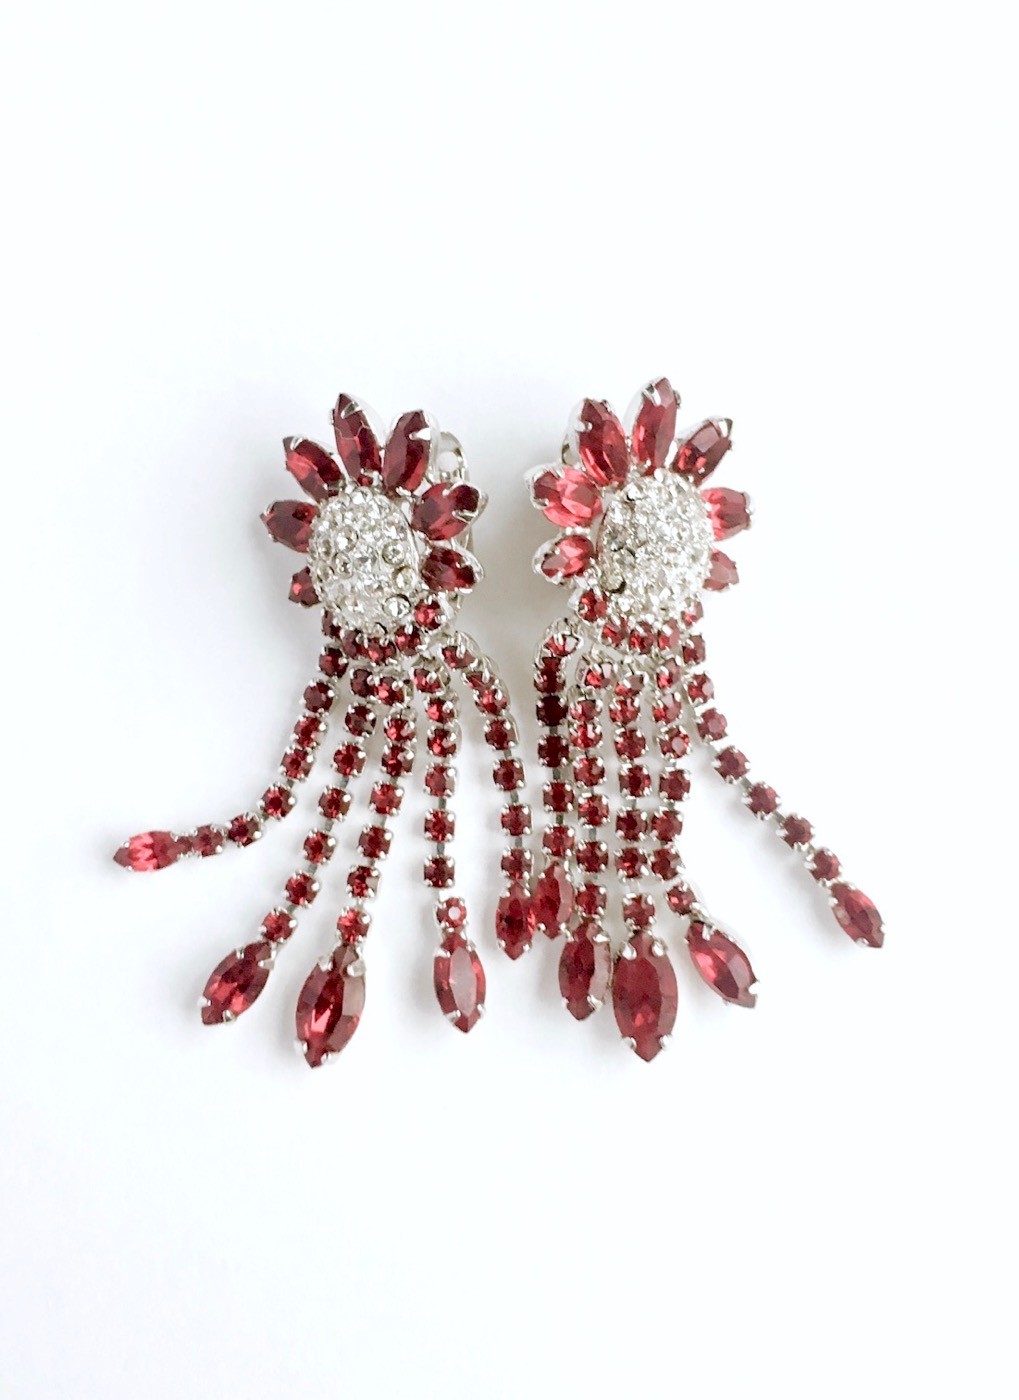 Weiss red rhinestone waterfall earrings – Hemlock Vintage Clothing